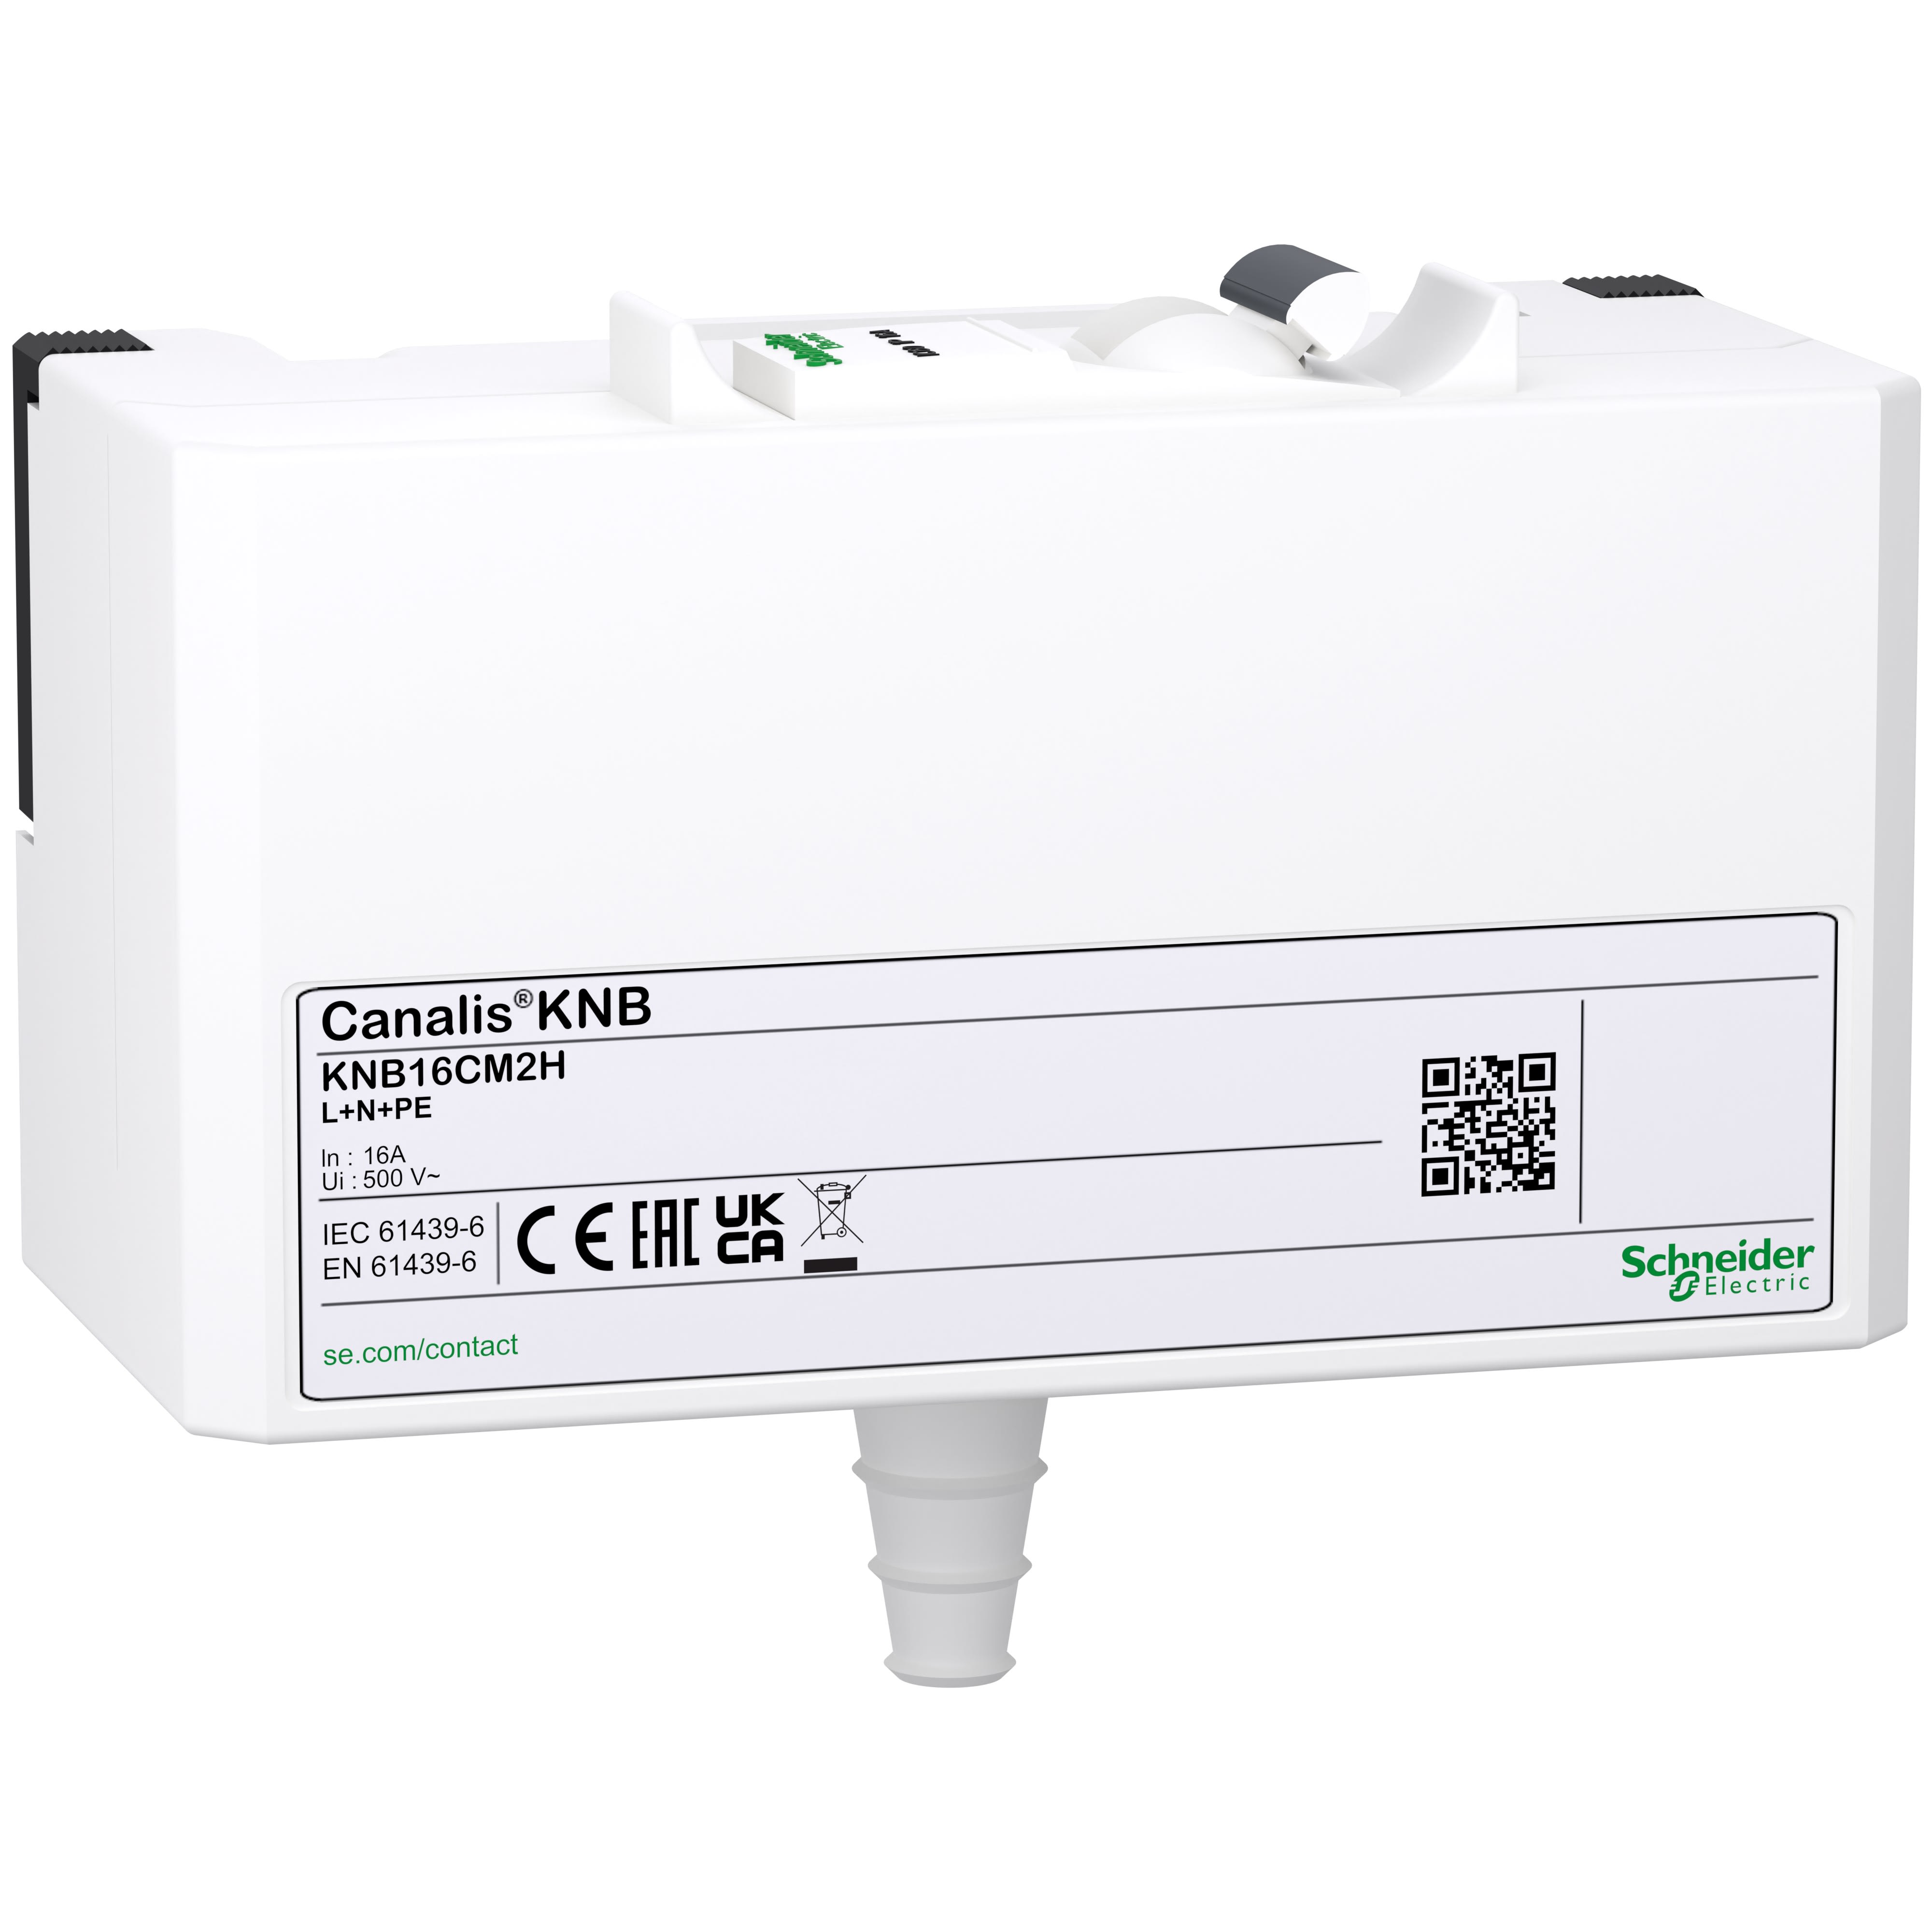 Schneider Electric - Canalis KNA & KNT - connecteur derivat. C60H - Select. Ph-16 A - 1L+N+PE - IP41